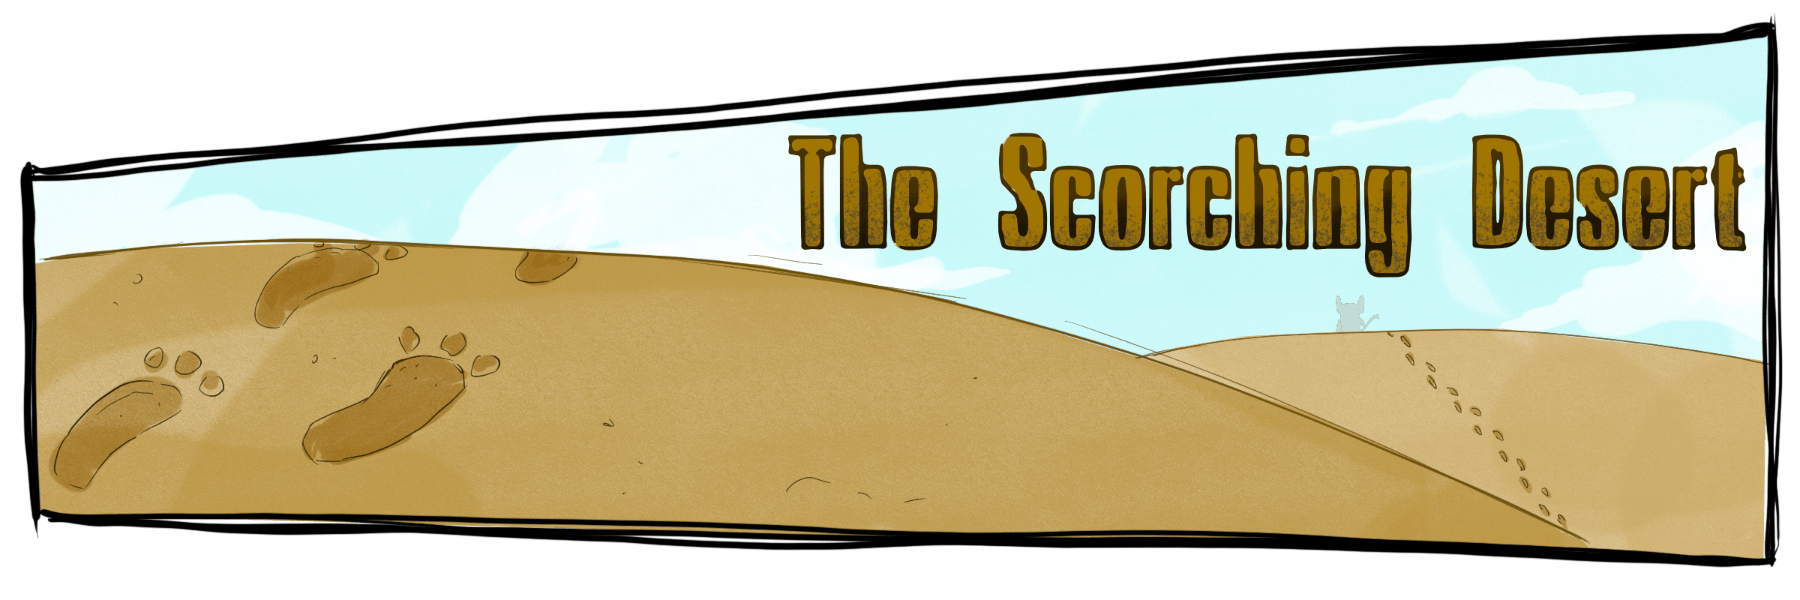 The Scorching Desert